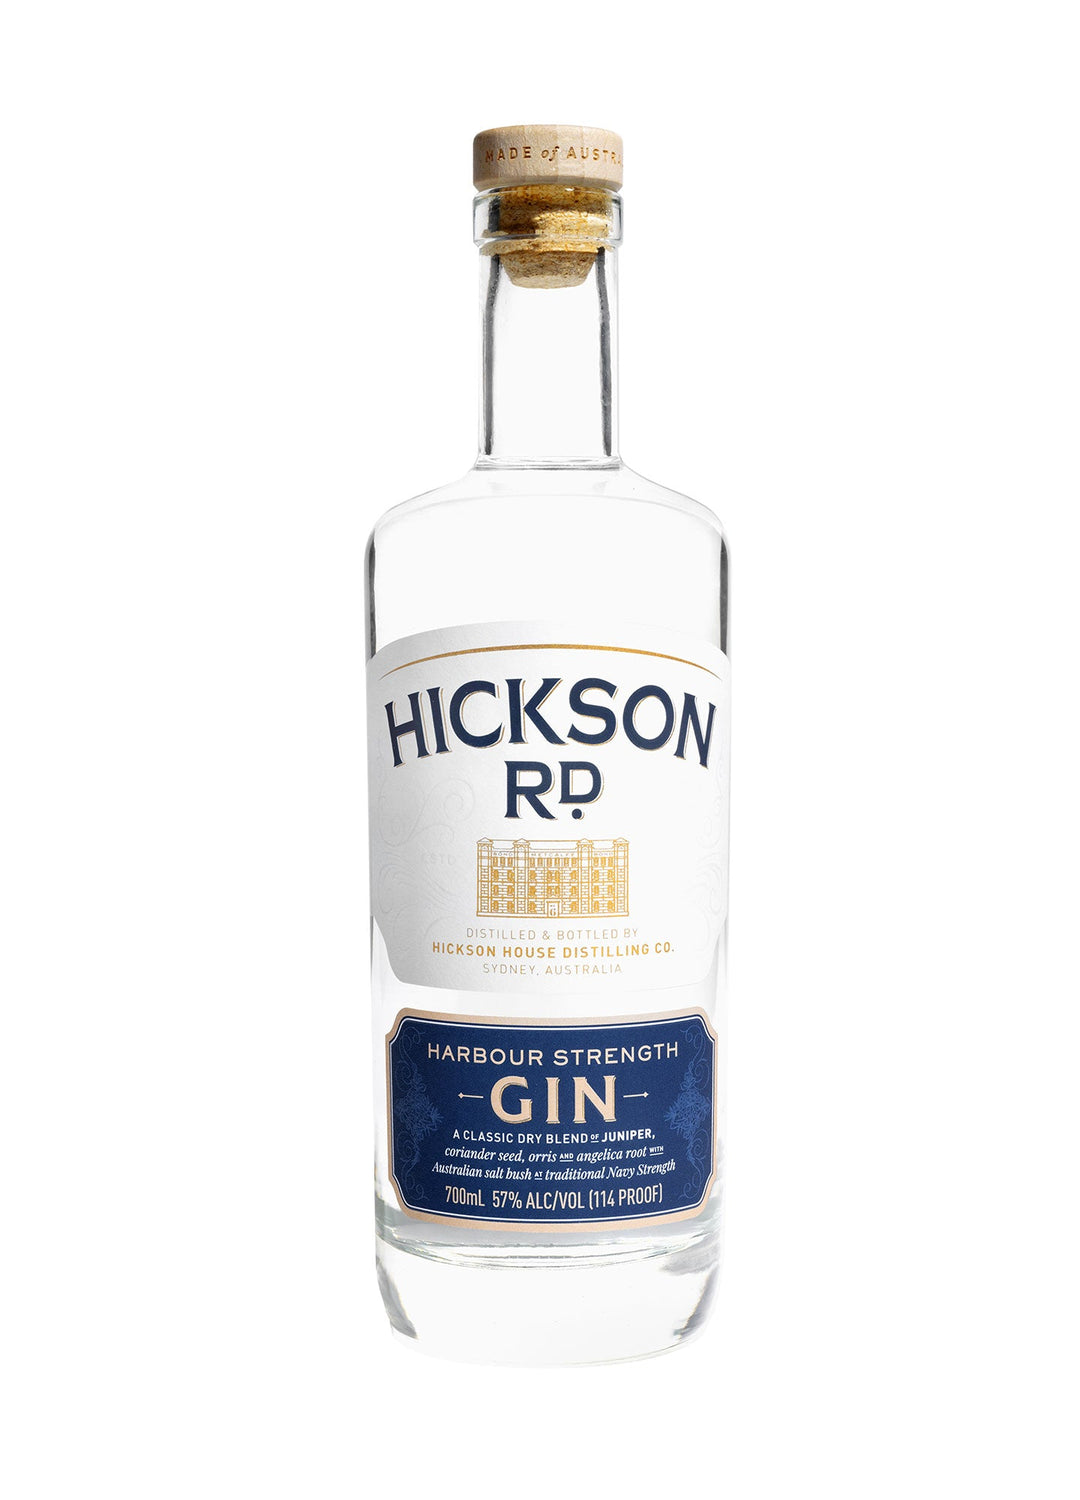 Buy Hickson Rd Hickson Rd. Harbour Strength Gin (700ml) at Secret Bottle